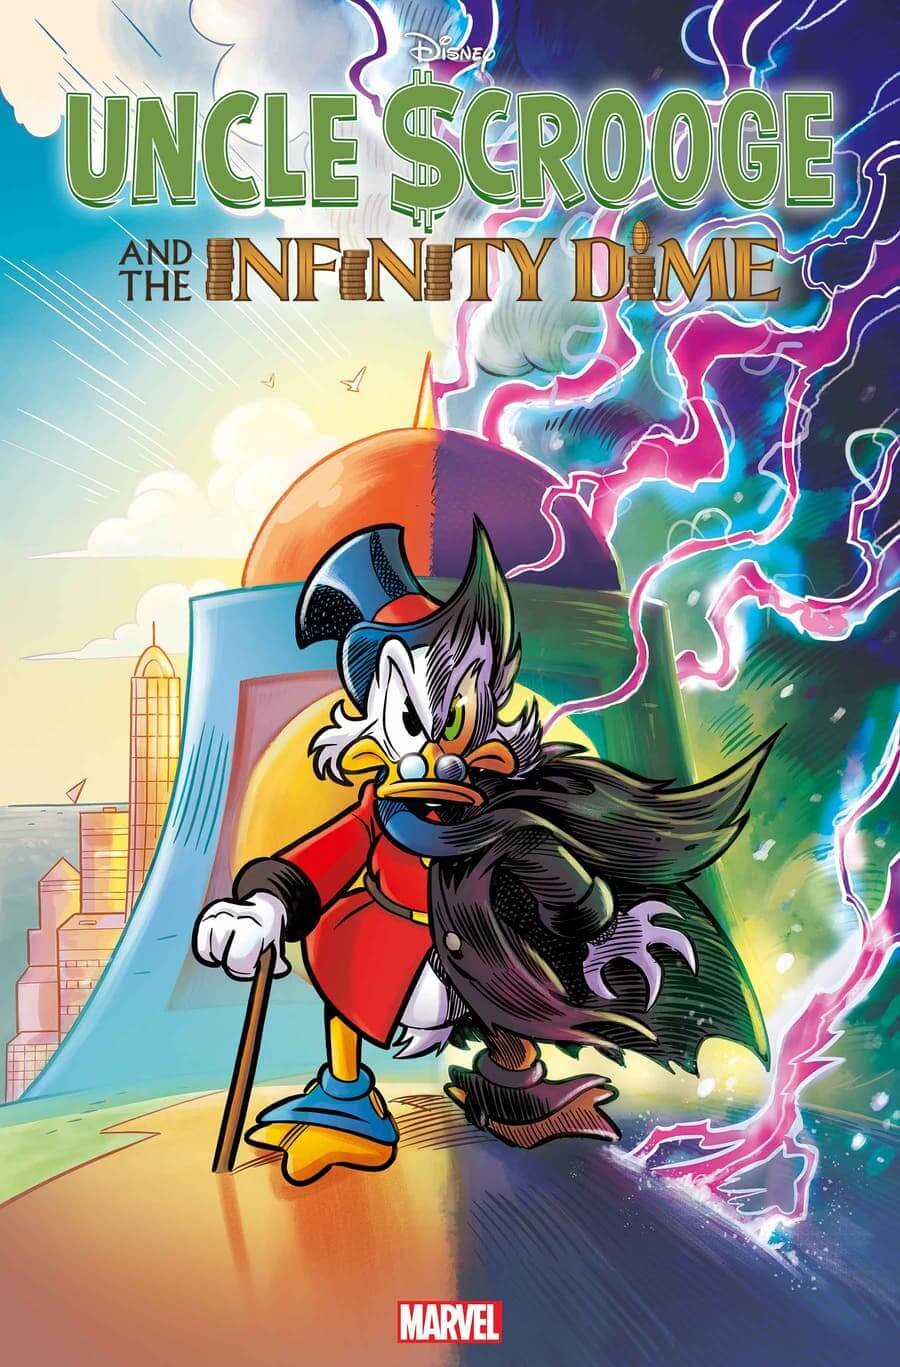 Couverture de Uncle $crooge and the Infinity Dime par Lorenzo Pastrovicchio, première bande dessinée Uncle Scrooge publiée par Marvel.